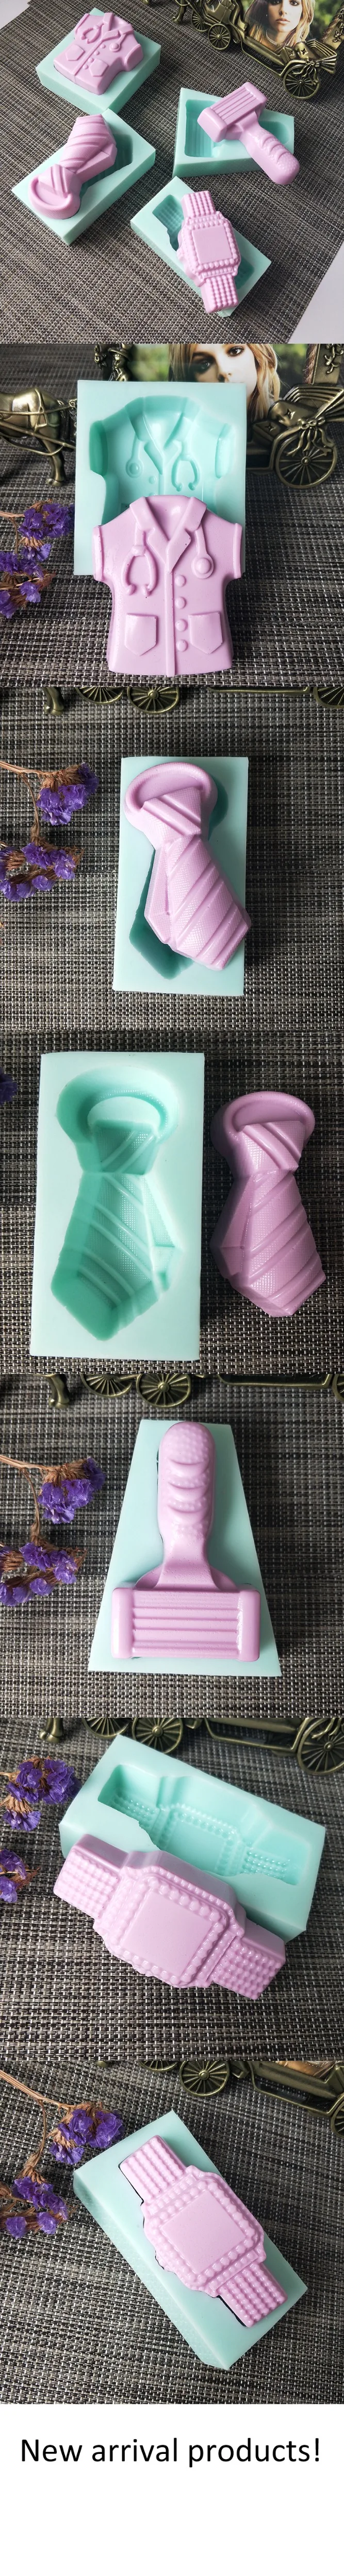 PRZY футболка силиконовая форма для украшения торта шоколадные формы ручной работы DIY Арома форма в виде одежды для мыловарения полимерные глиняные формы